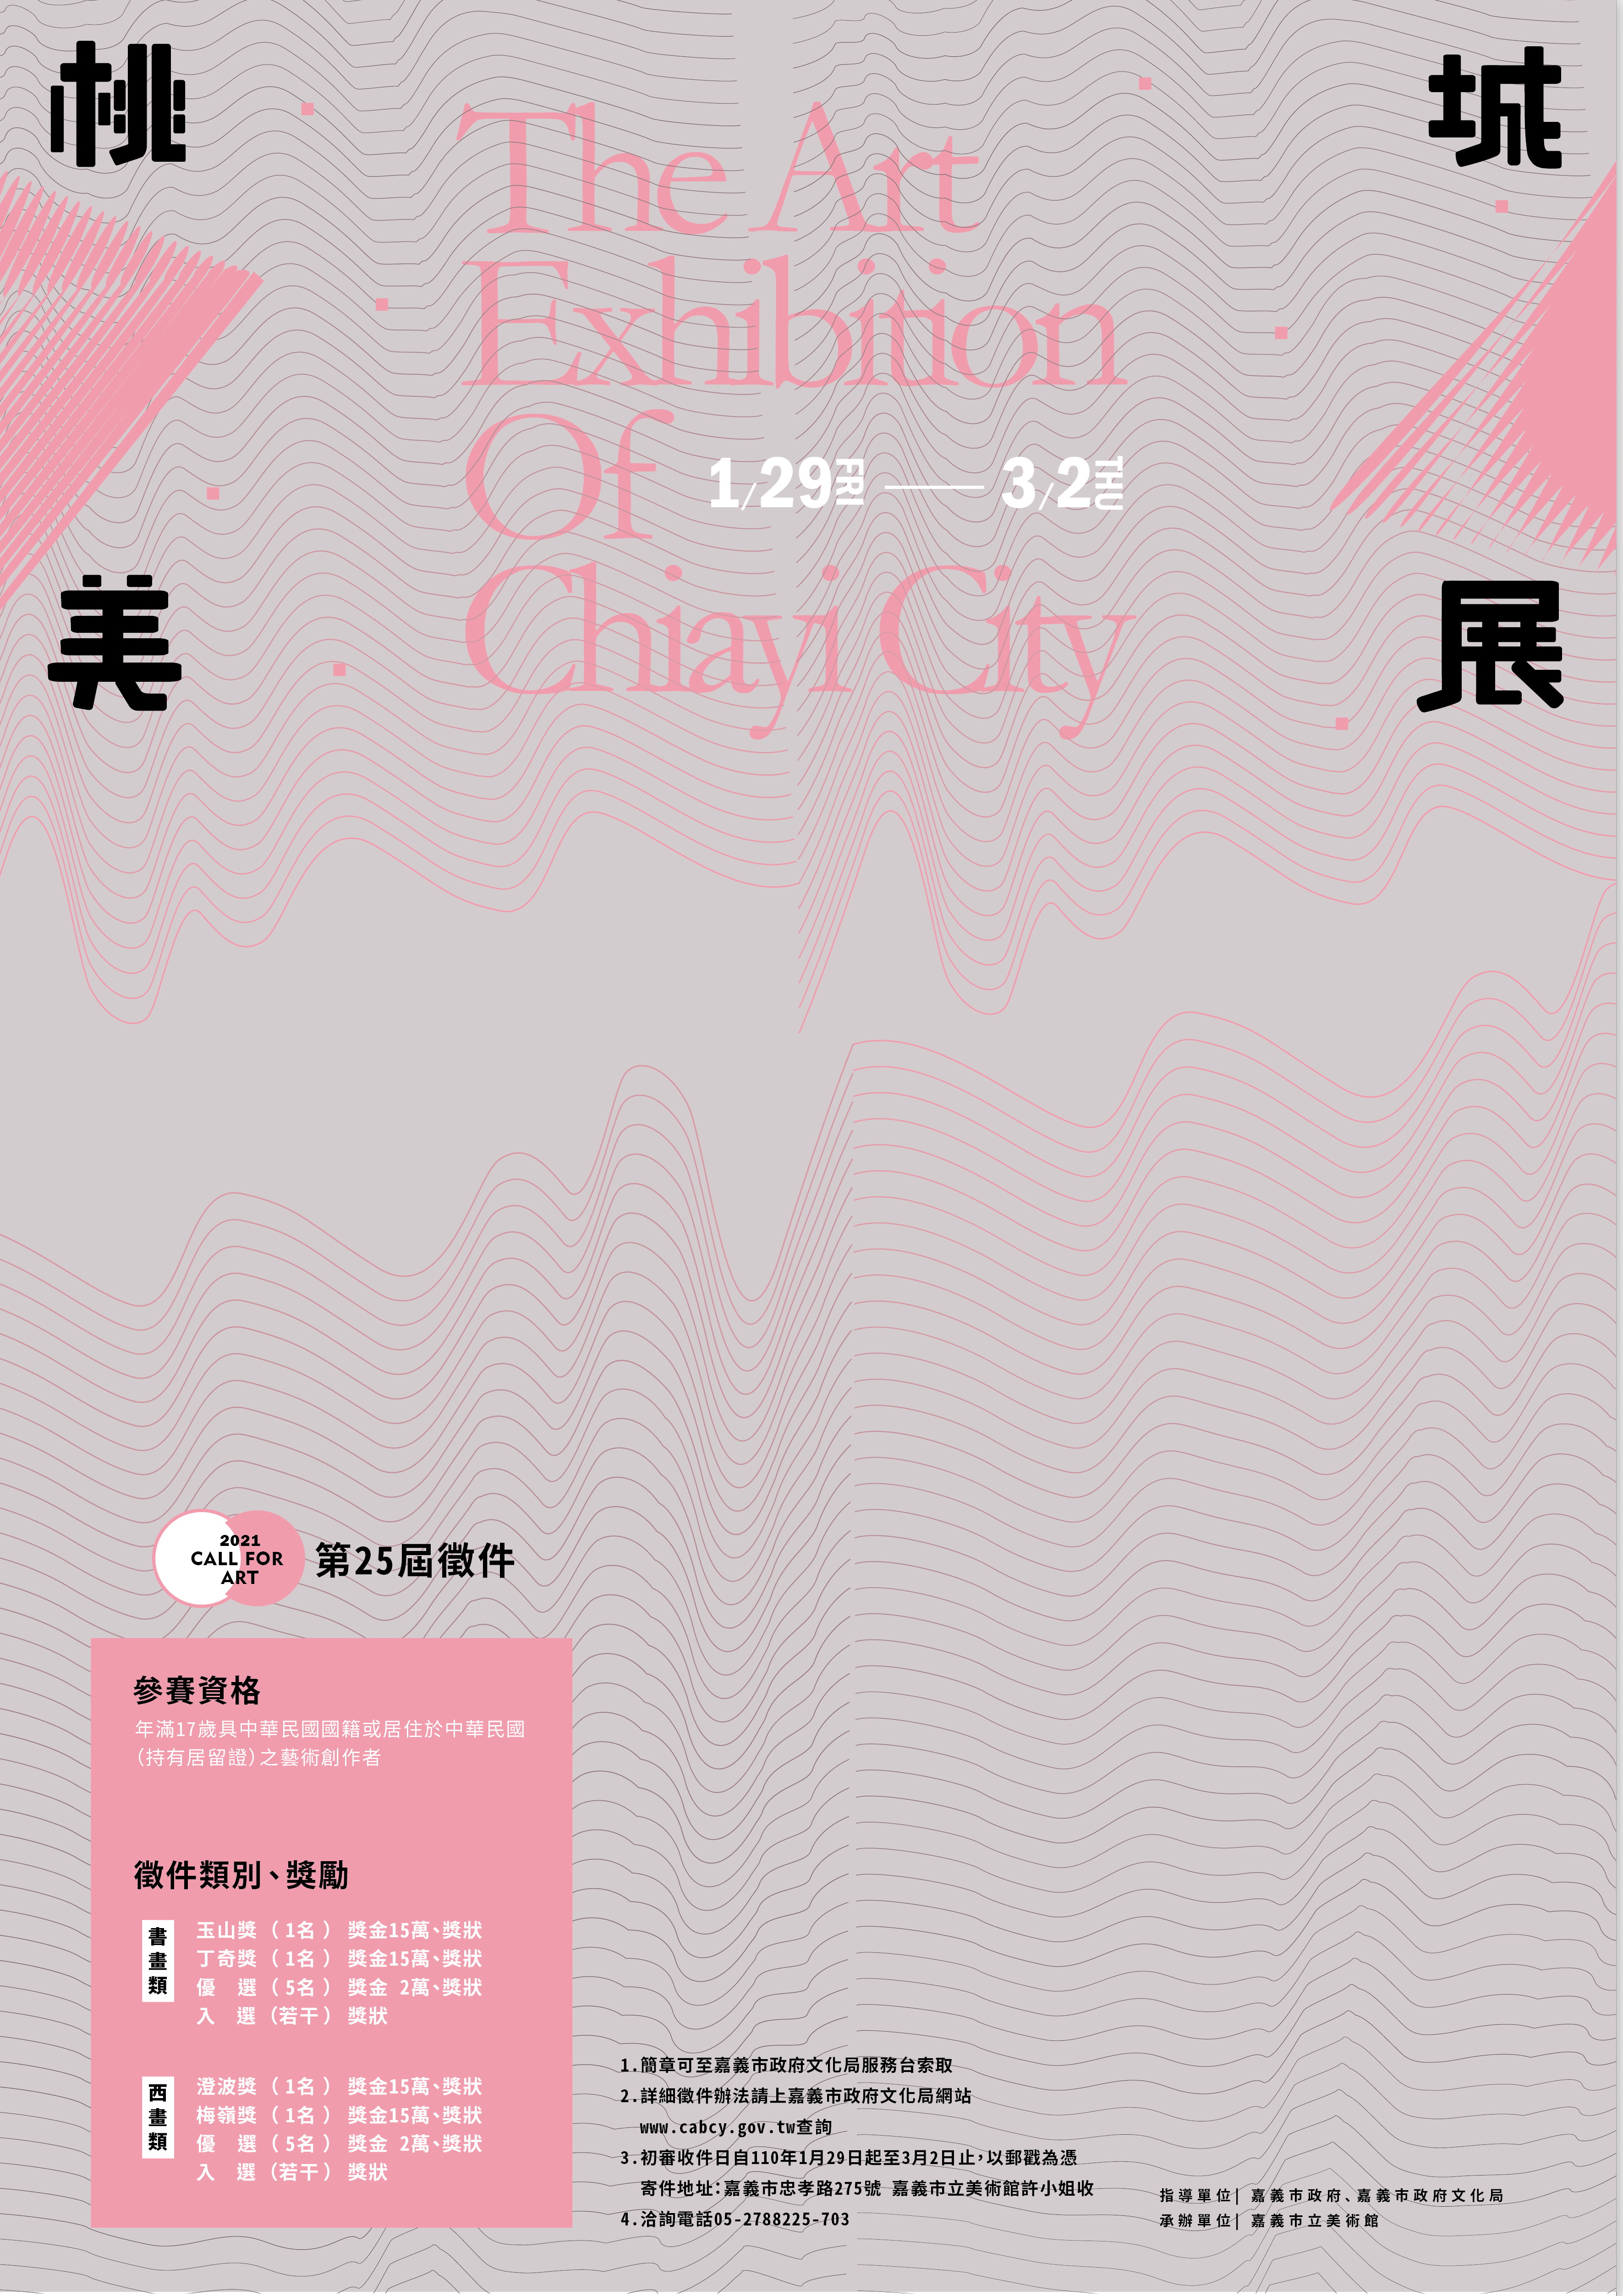 嘉義市立美術館自110年1月29日至3月2日止，受理「2021年第25屆桃城美術展覽會徵件」，歡迎踴躍參加。